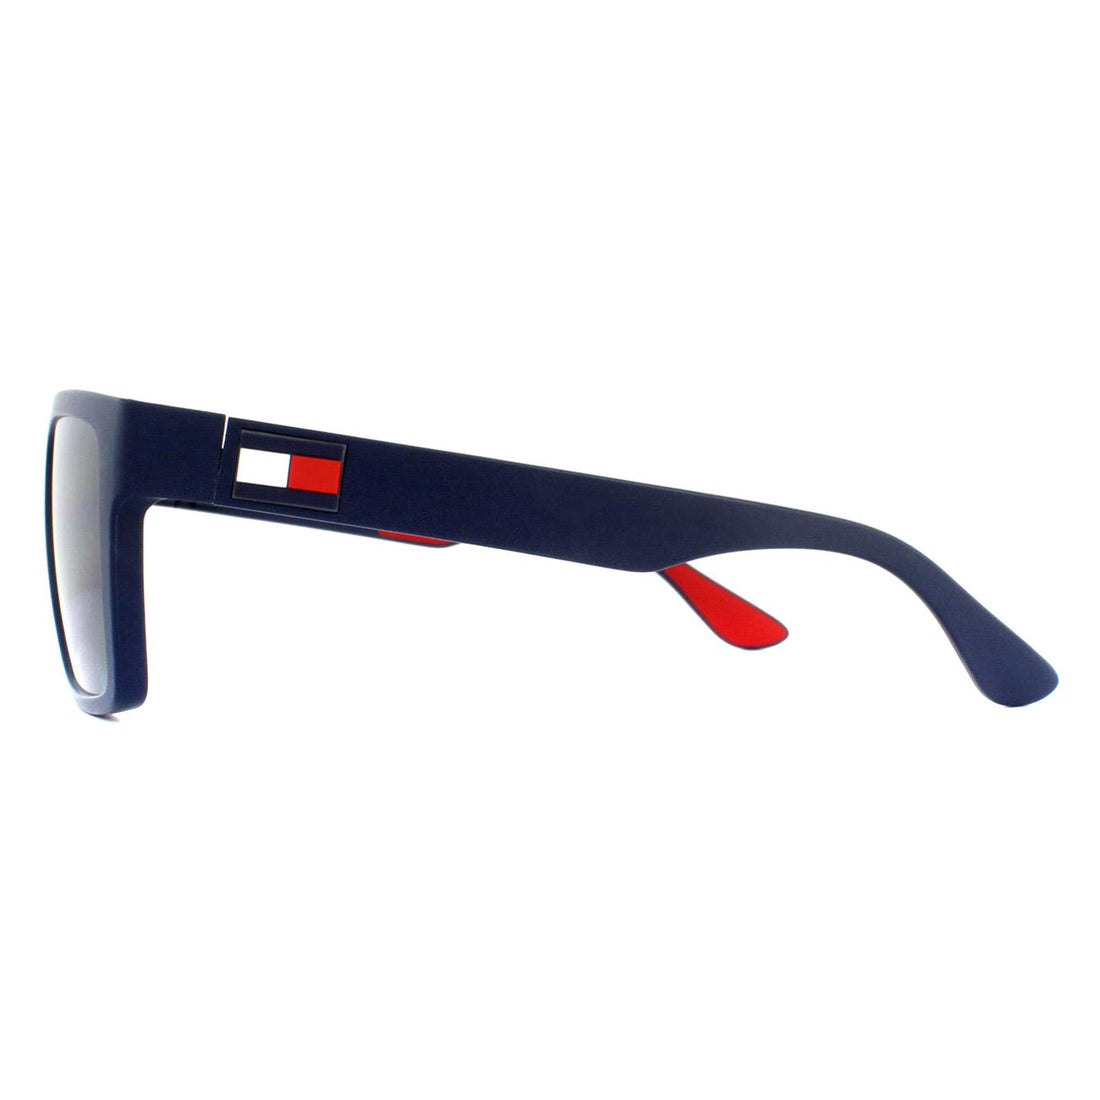 Tommy Hilfiger Sunglasses TH 1605/S IPQ KU Matt Blue Blue